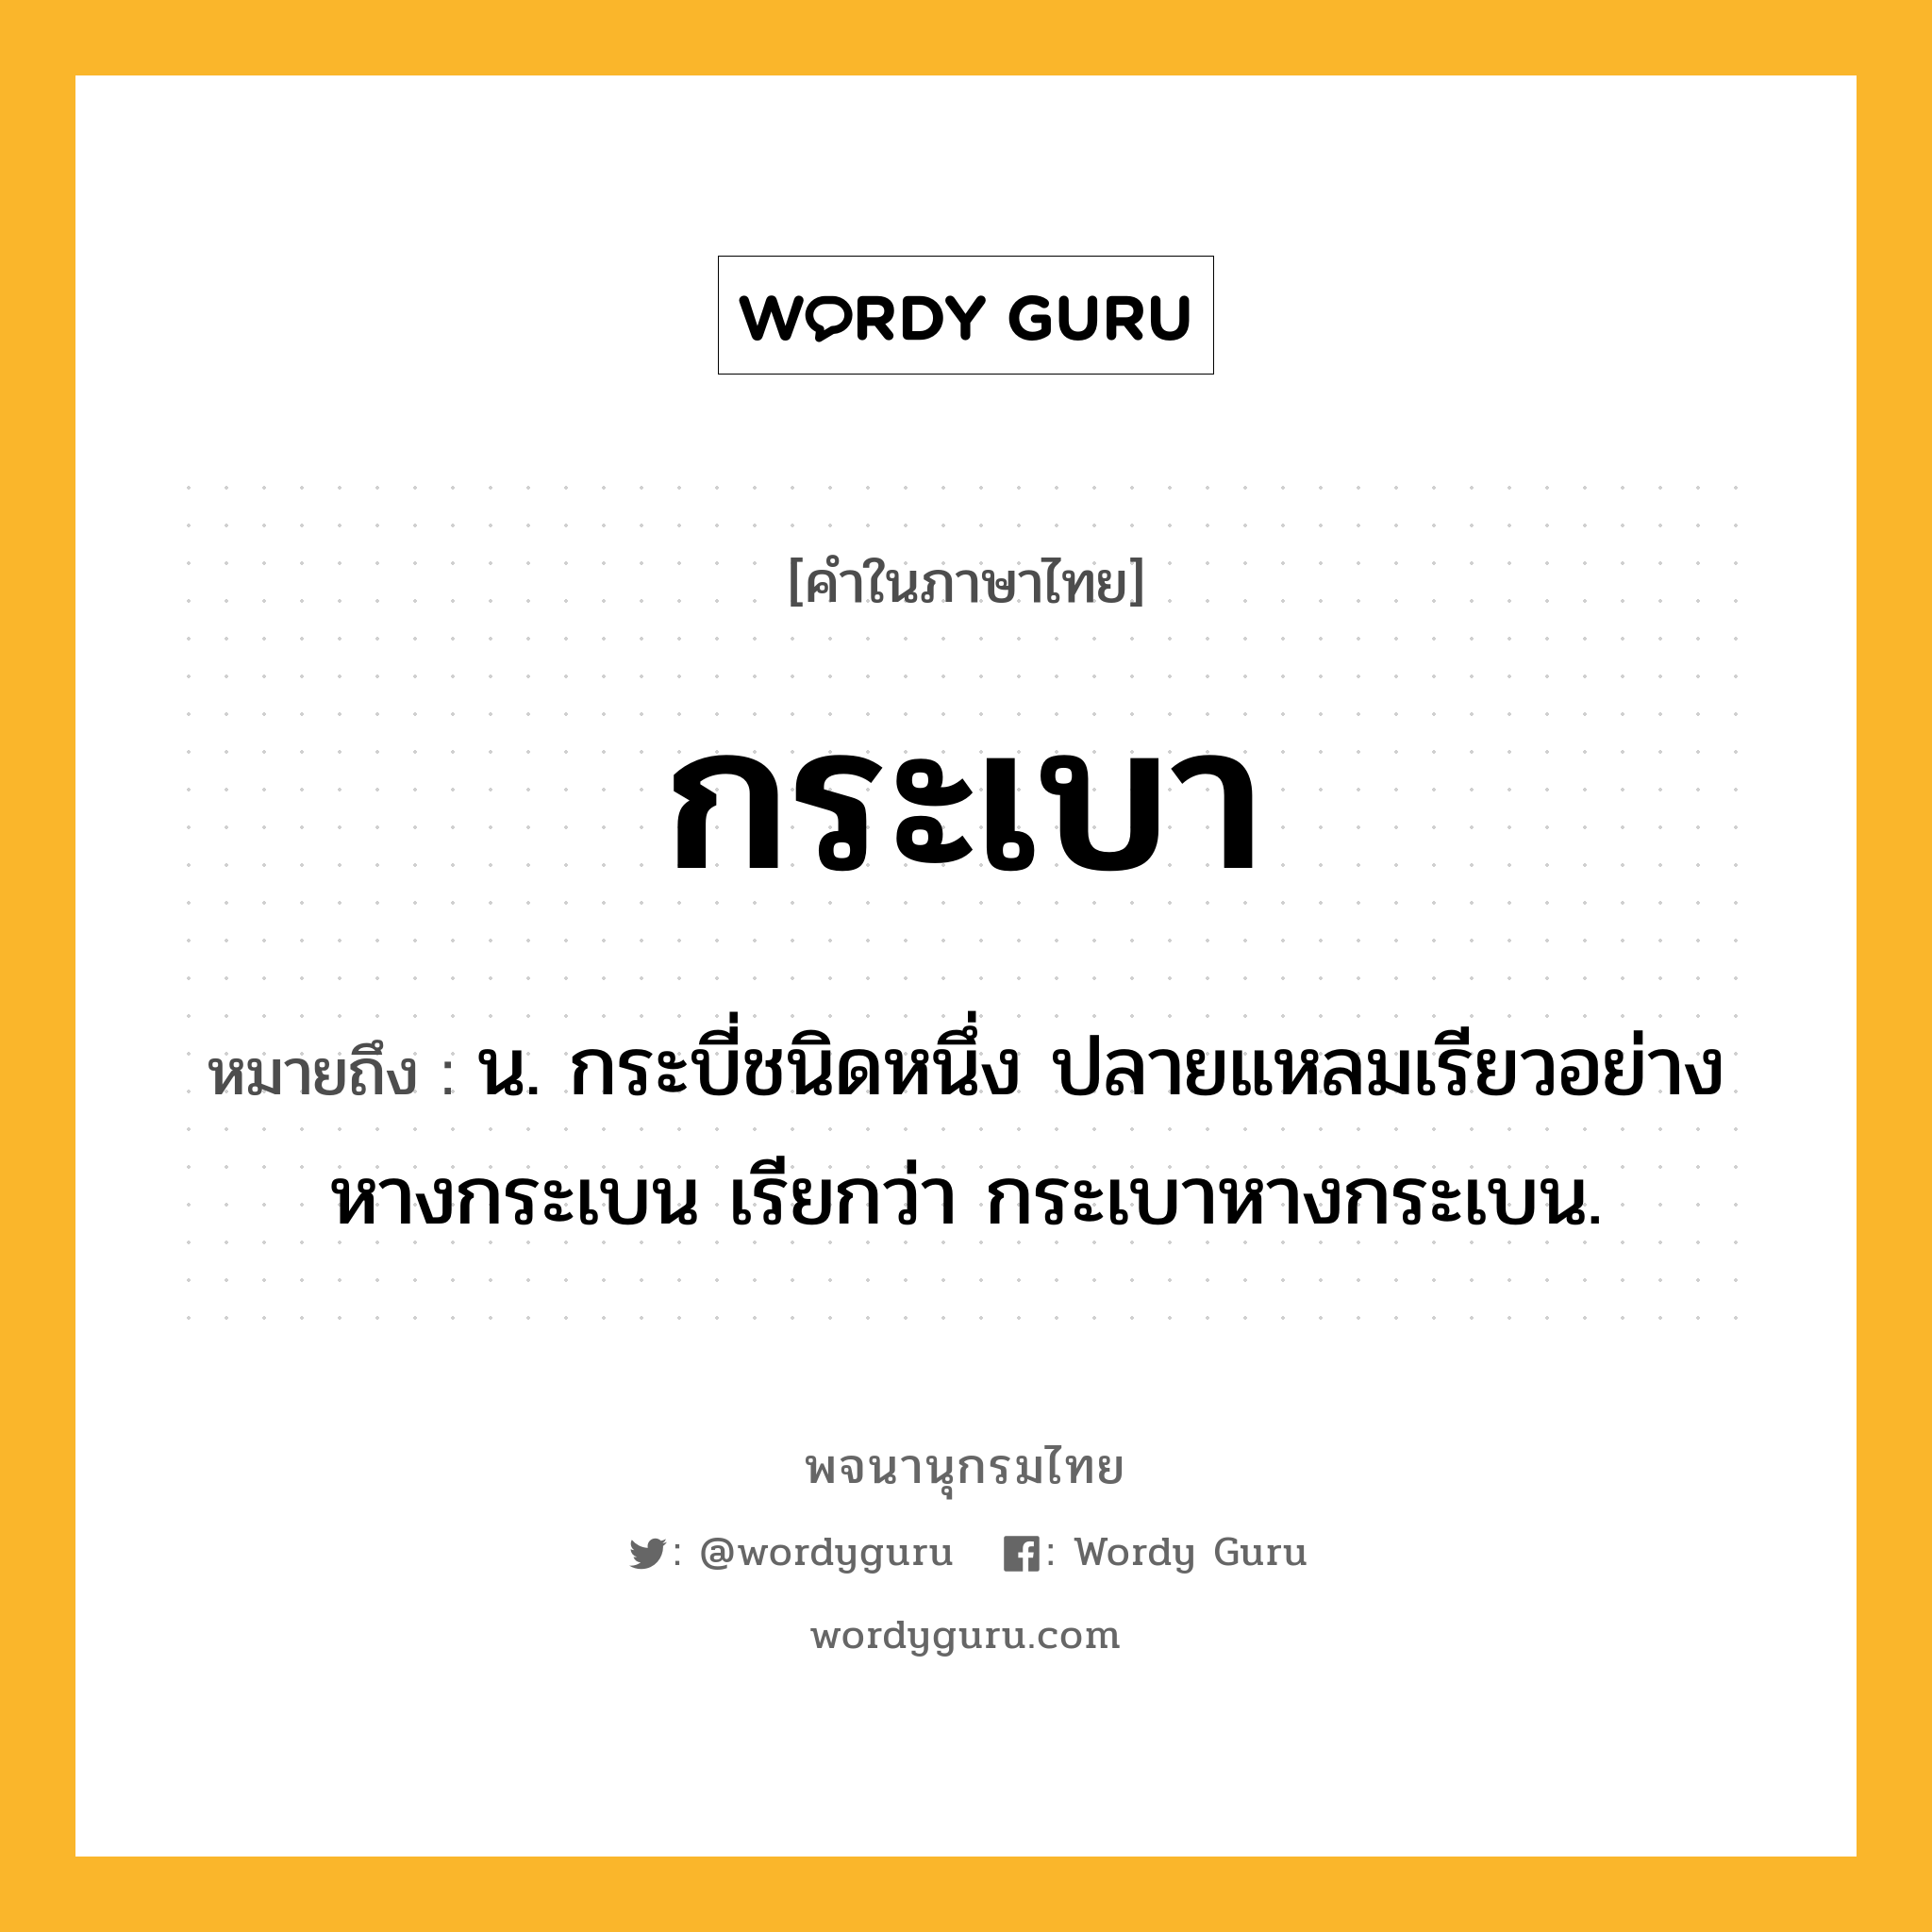 กระเบา ความหมาย หมายถึงอะไร?, คำในภาษาไทย กระเบา หมายถึง น. กระบี่ชนิดหนึ่ง ปลายแหลมเรียวอย่างหางกระเบน เรียกว่า กระเบาหางกระเบน.